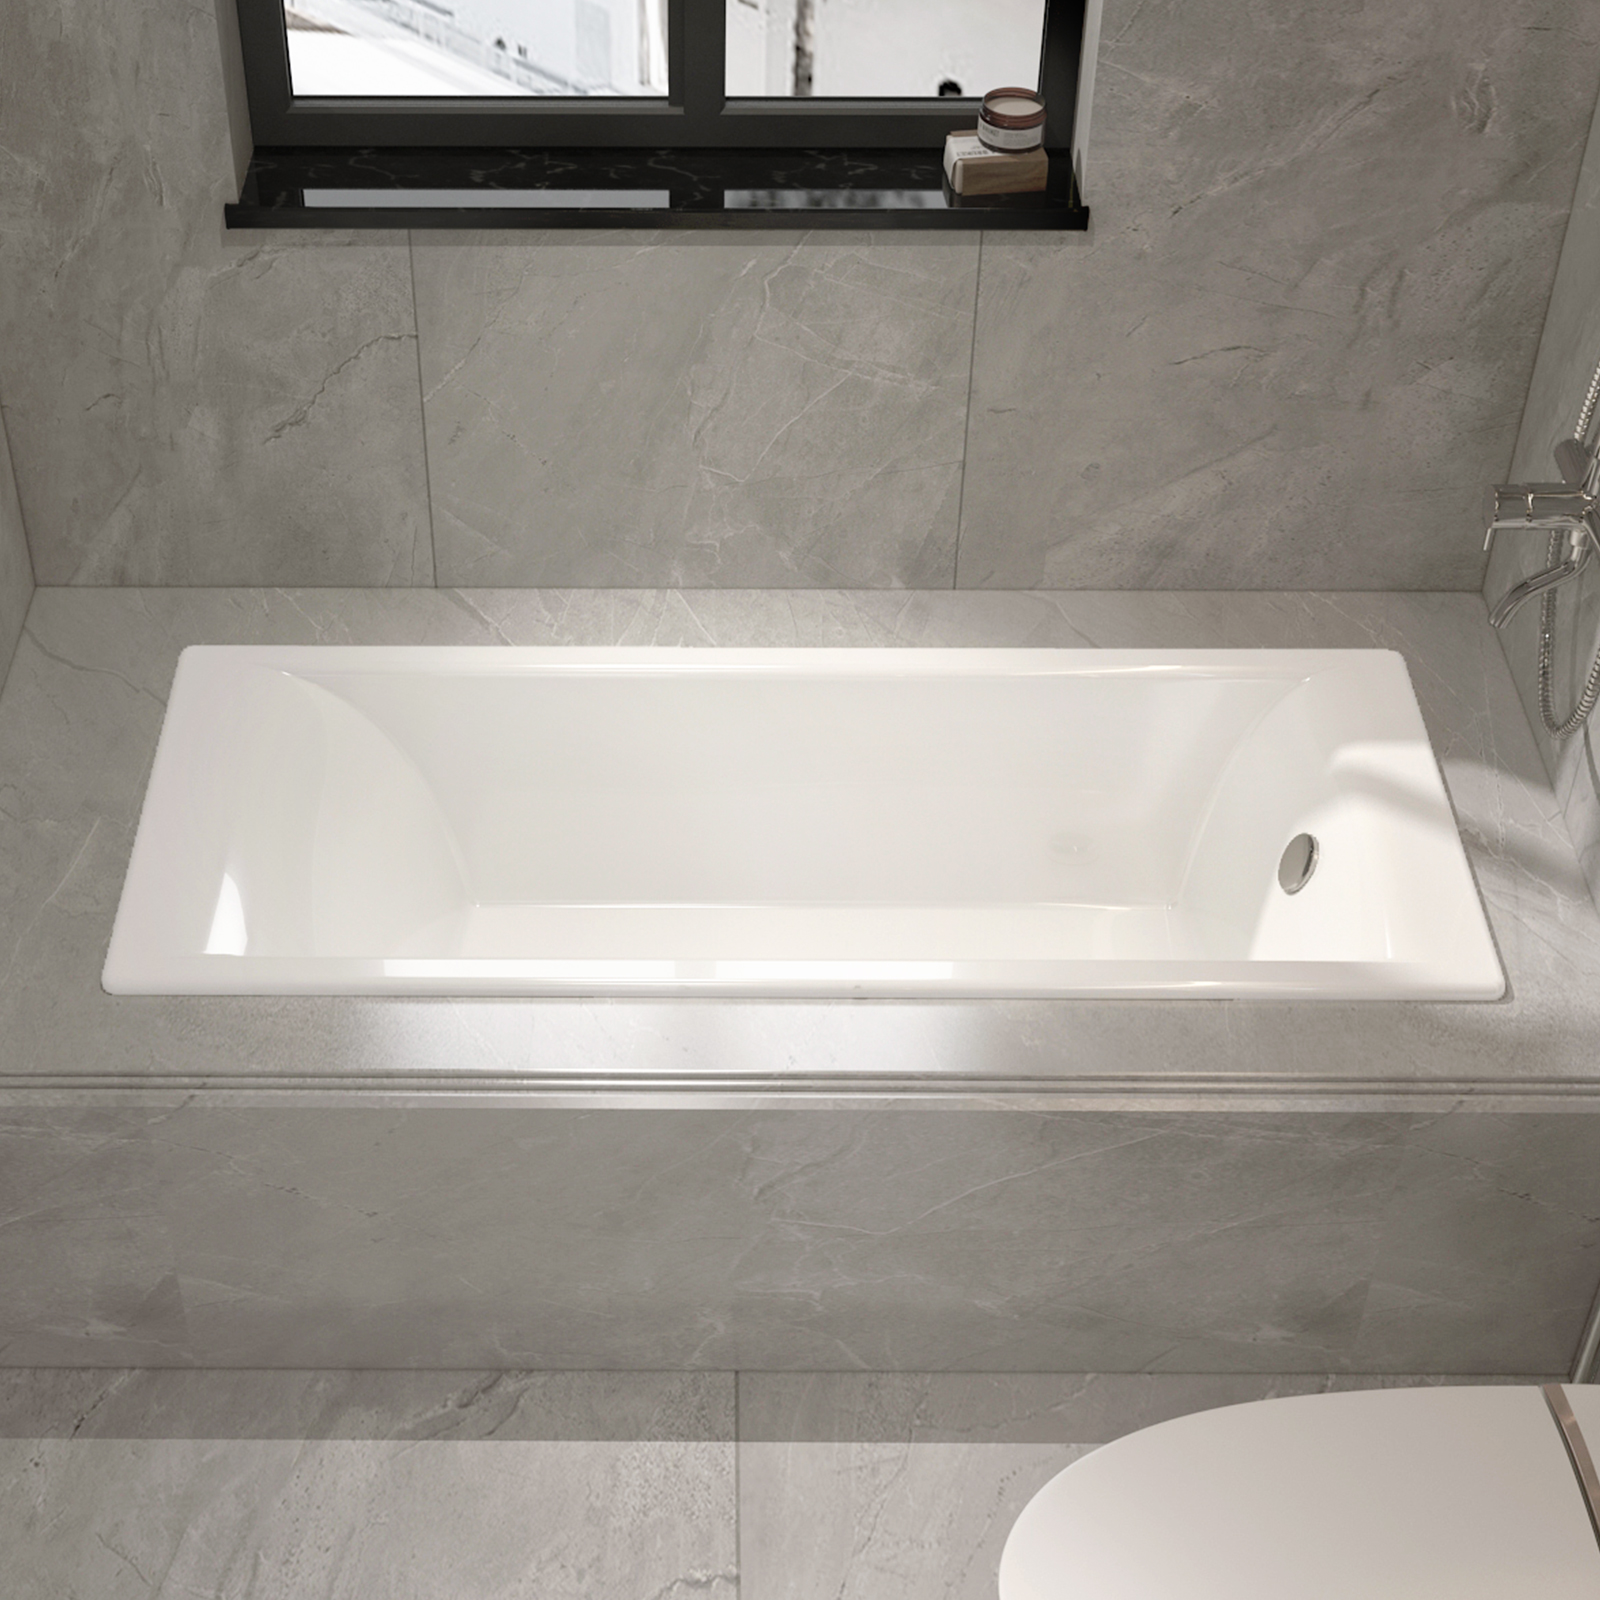 坐式单人卫生间方形搪瓷铸铁陶瓷嵌入式浴缸家用小户型成人贝格莱